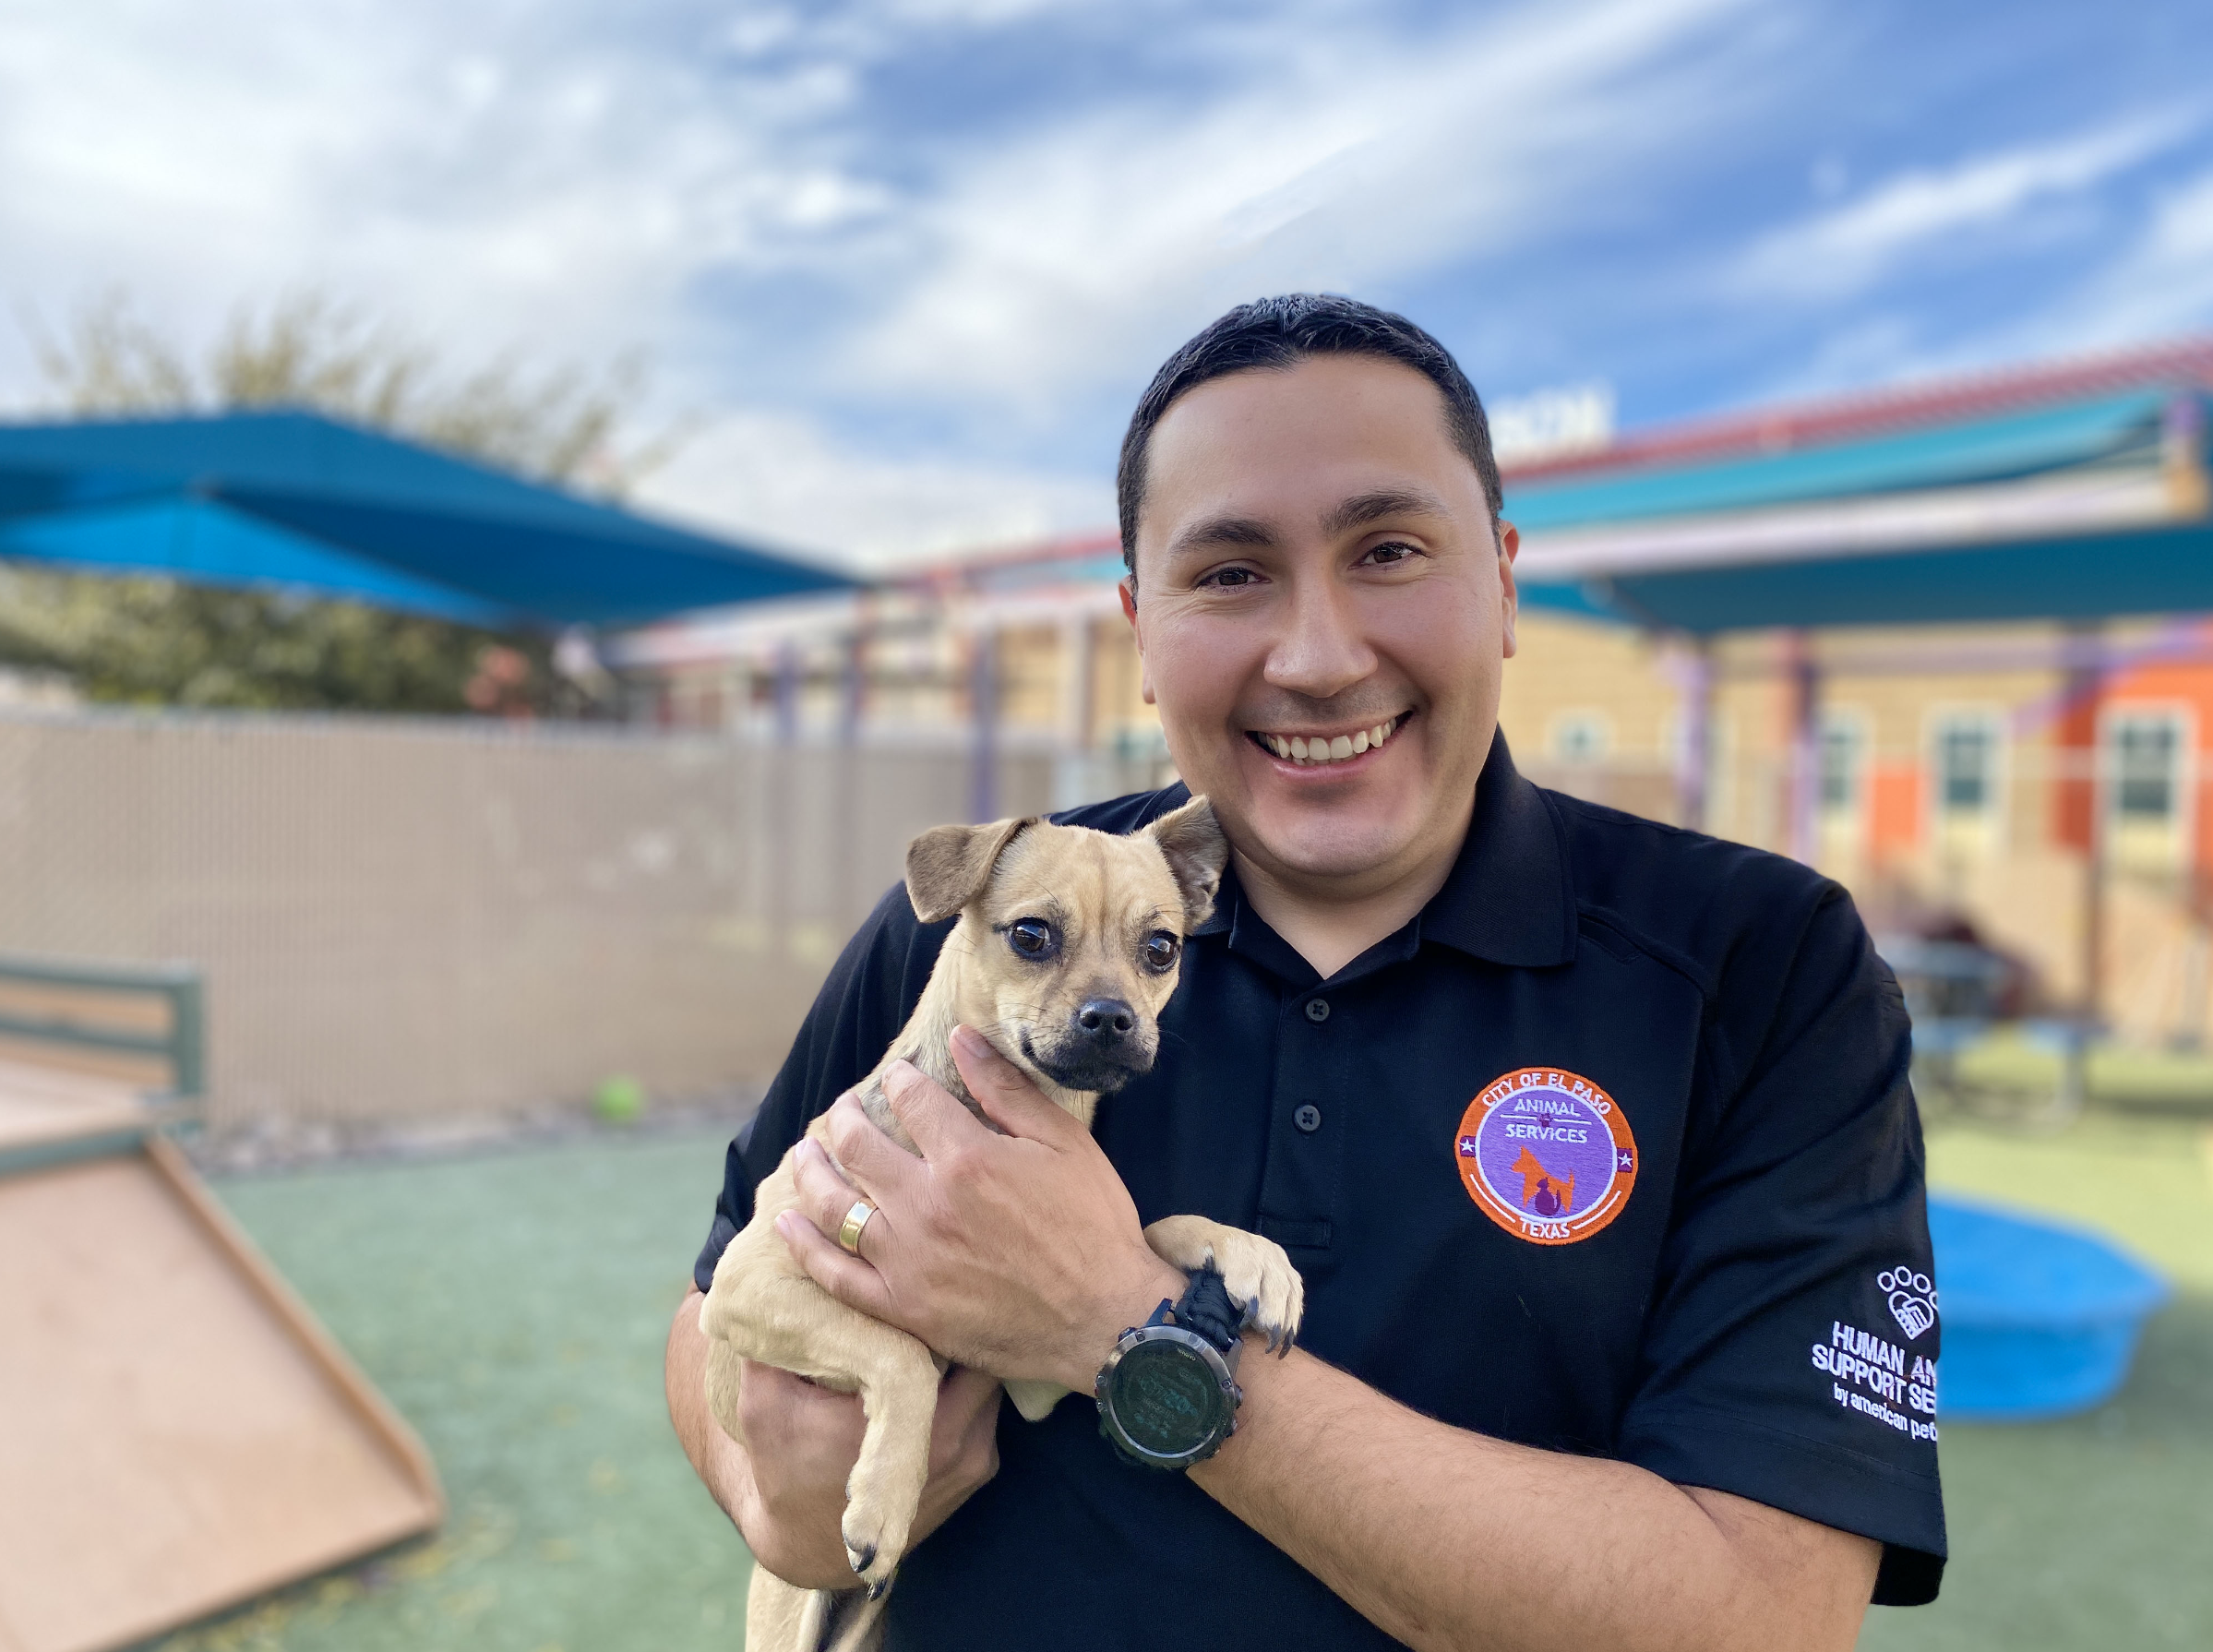 Press Release: City Appoints Interim Director of El Paso Animal Services